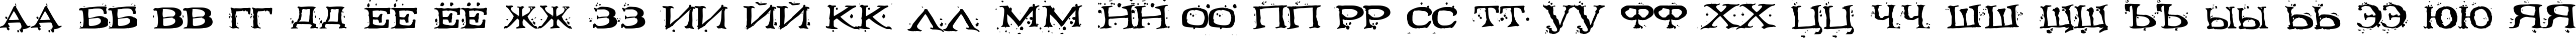 Пример написания русского алфавита шрифтом Fontocide